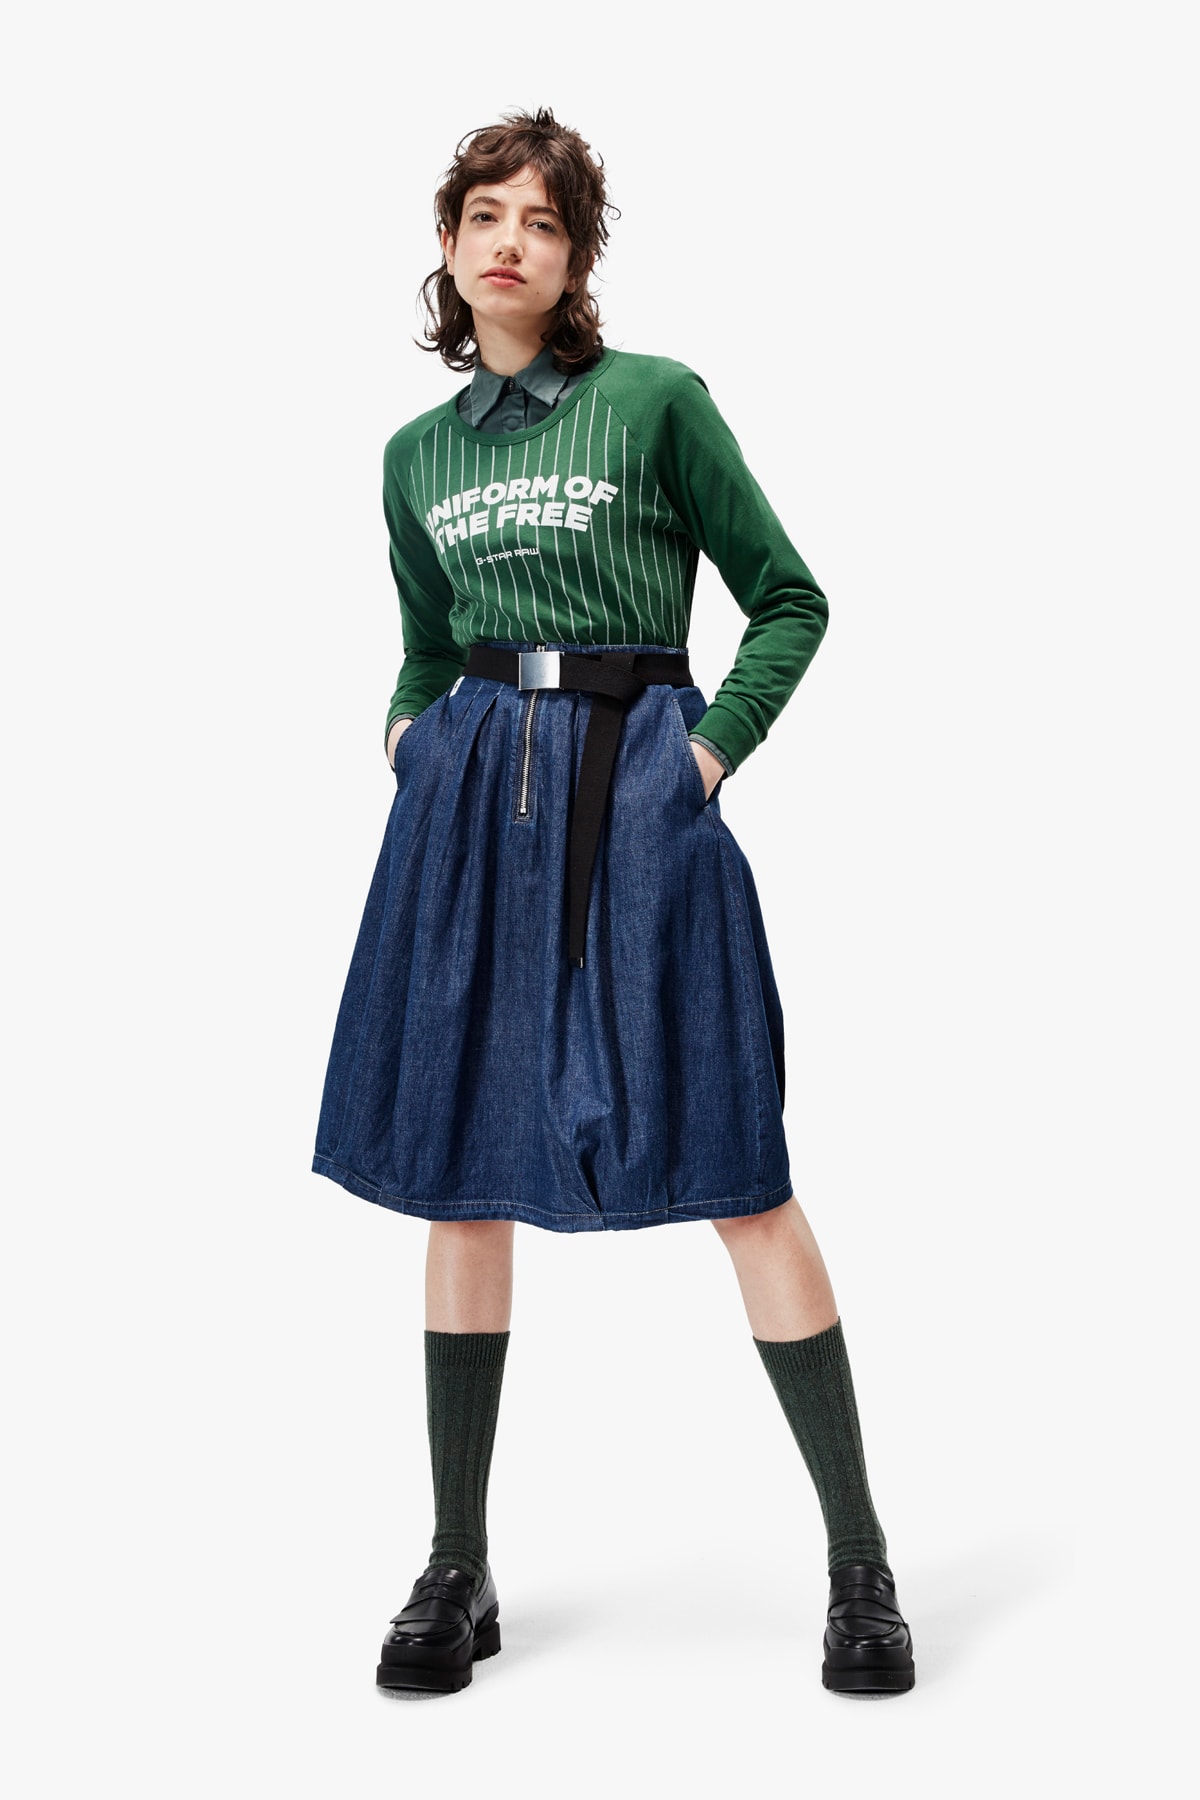 G-Star RAW Fall/Winter 2018 Lookbook Shirt Green Skirt Blue